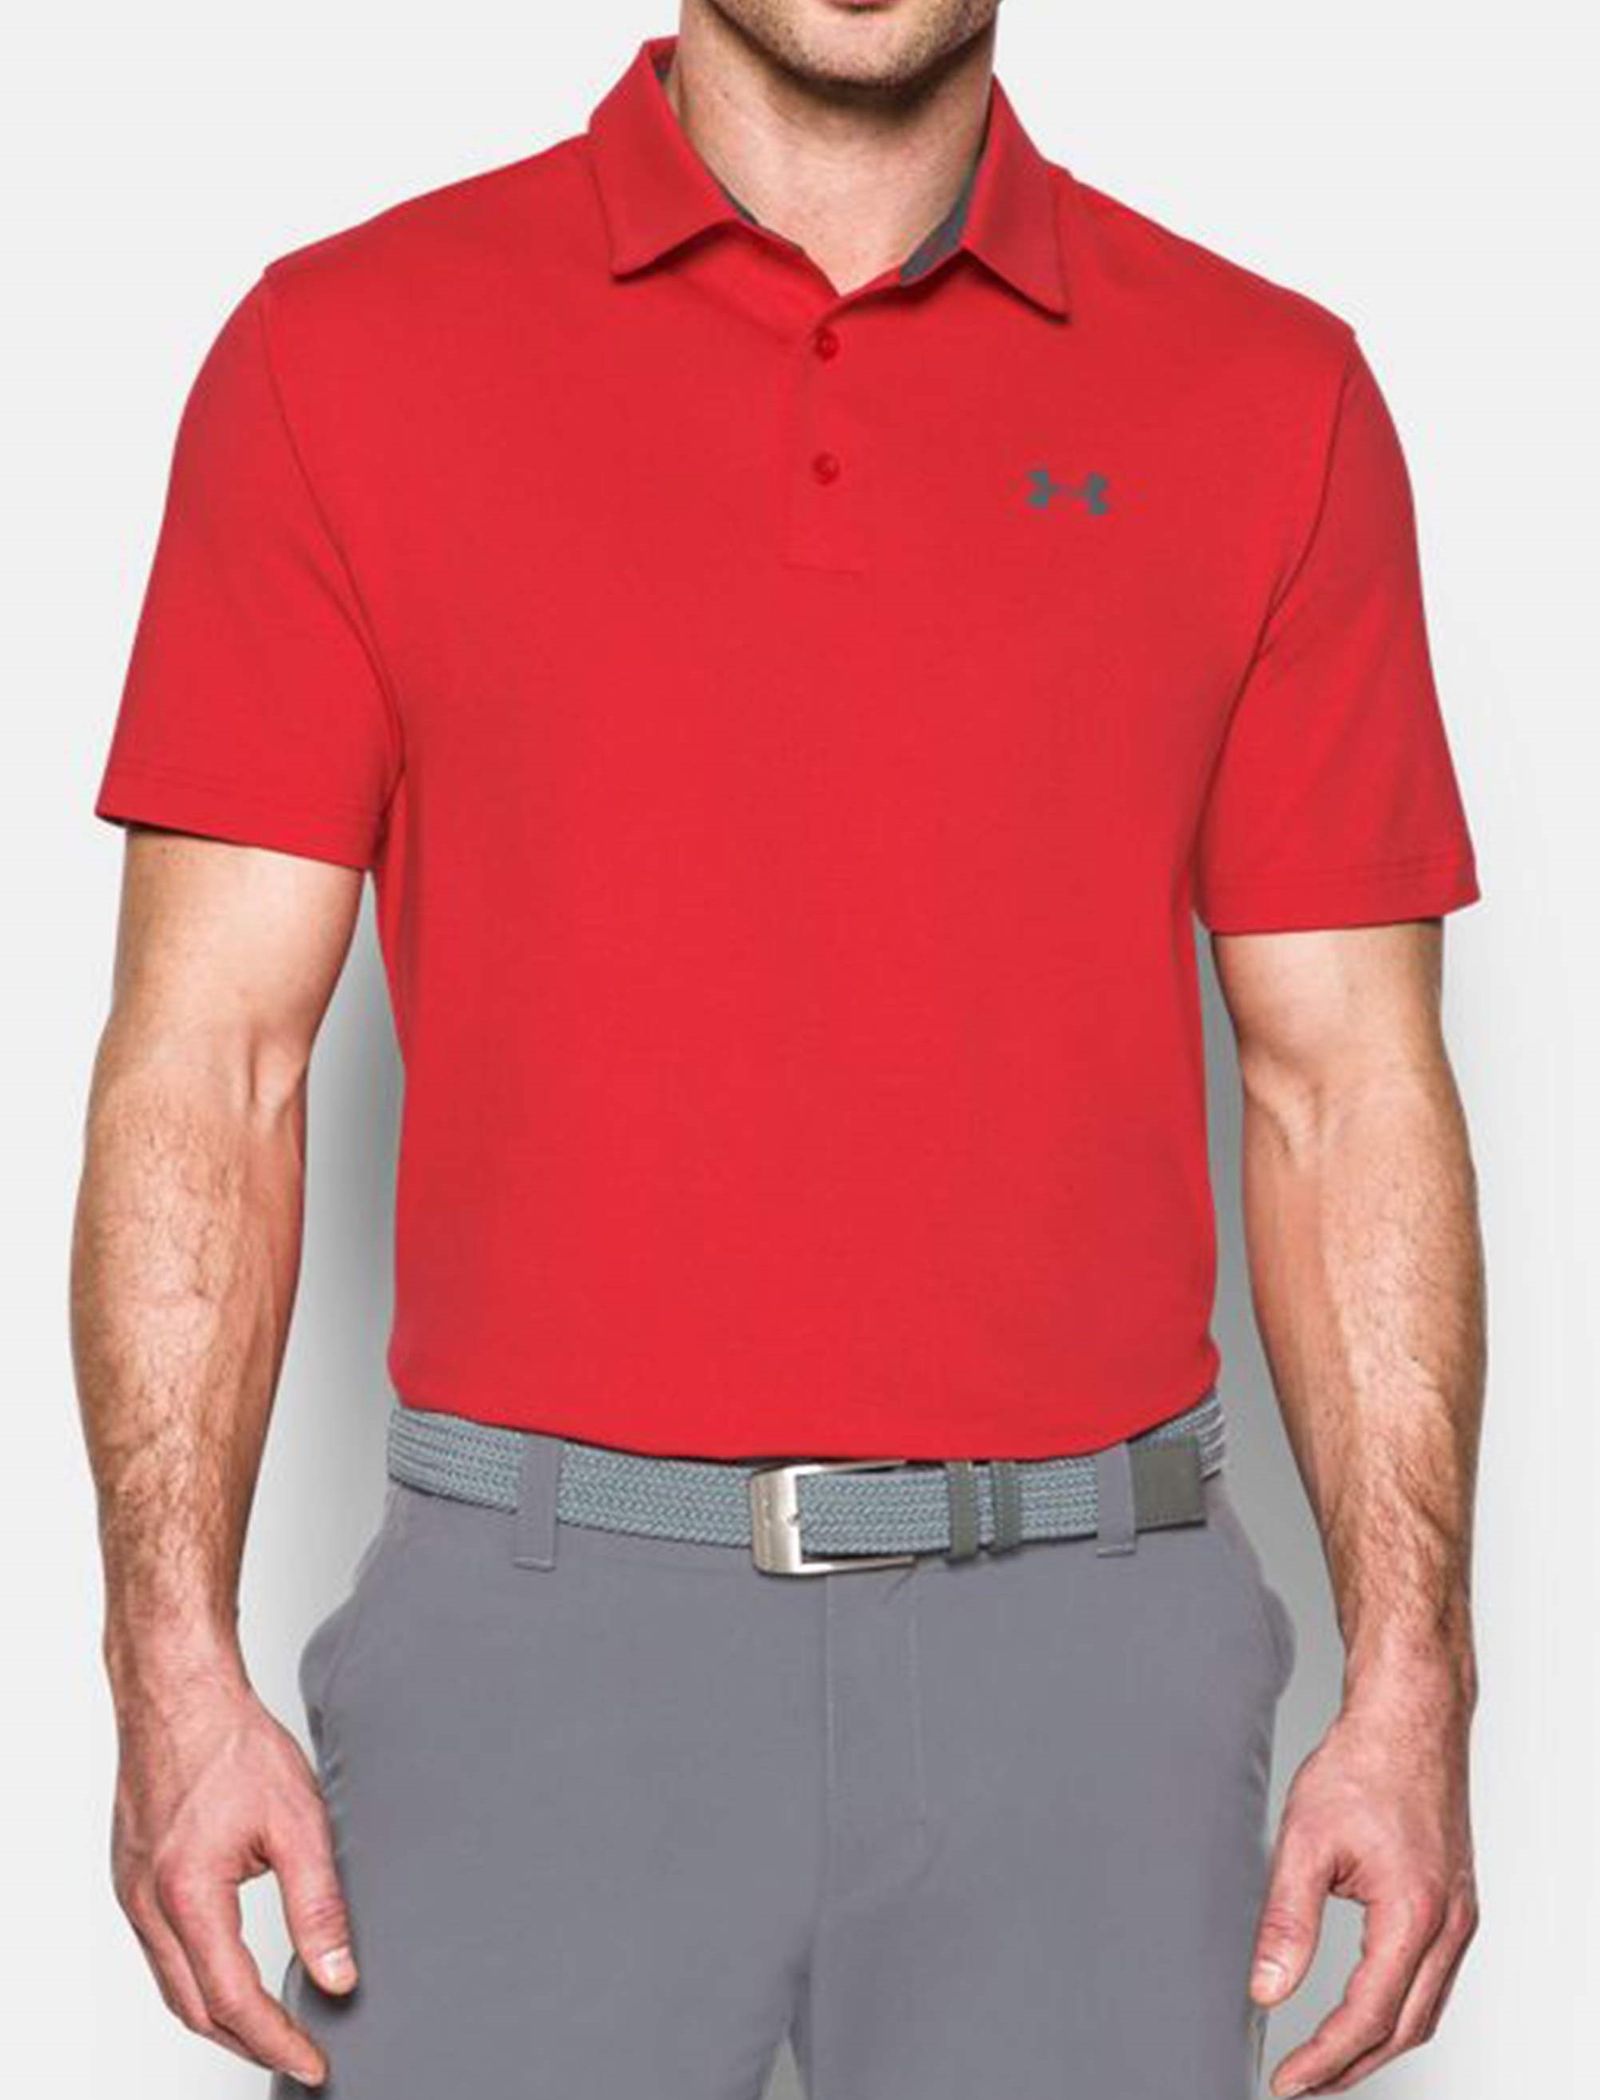 پولوشرت ورزشی آستین کوتاه مردانه - آندر آرمور - قرمز - 4